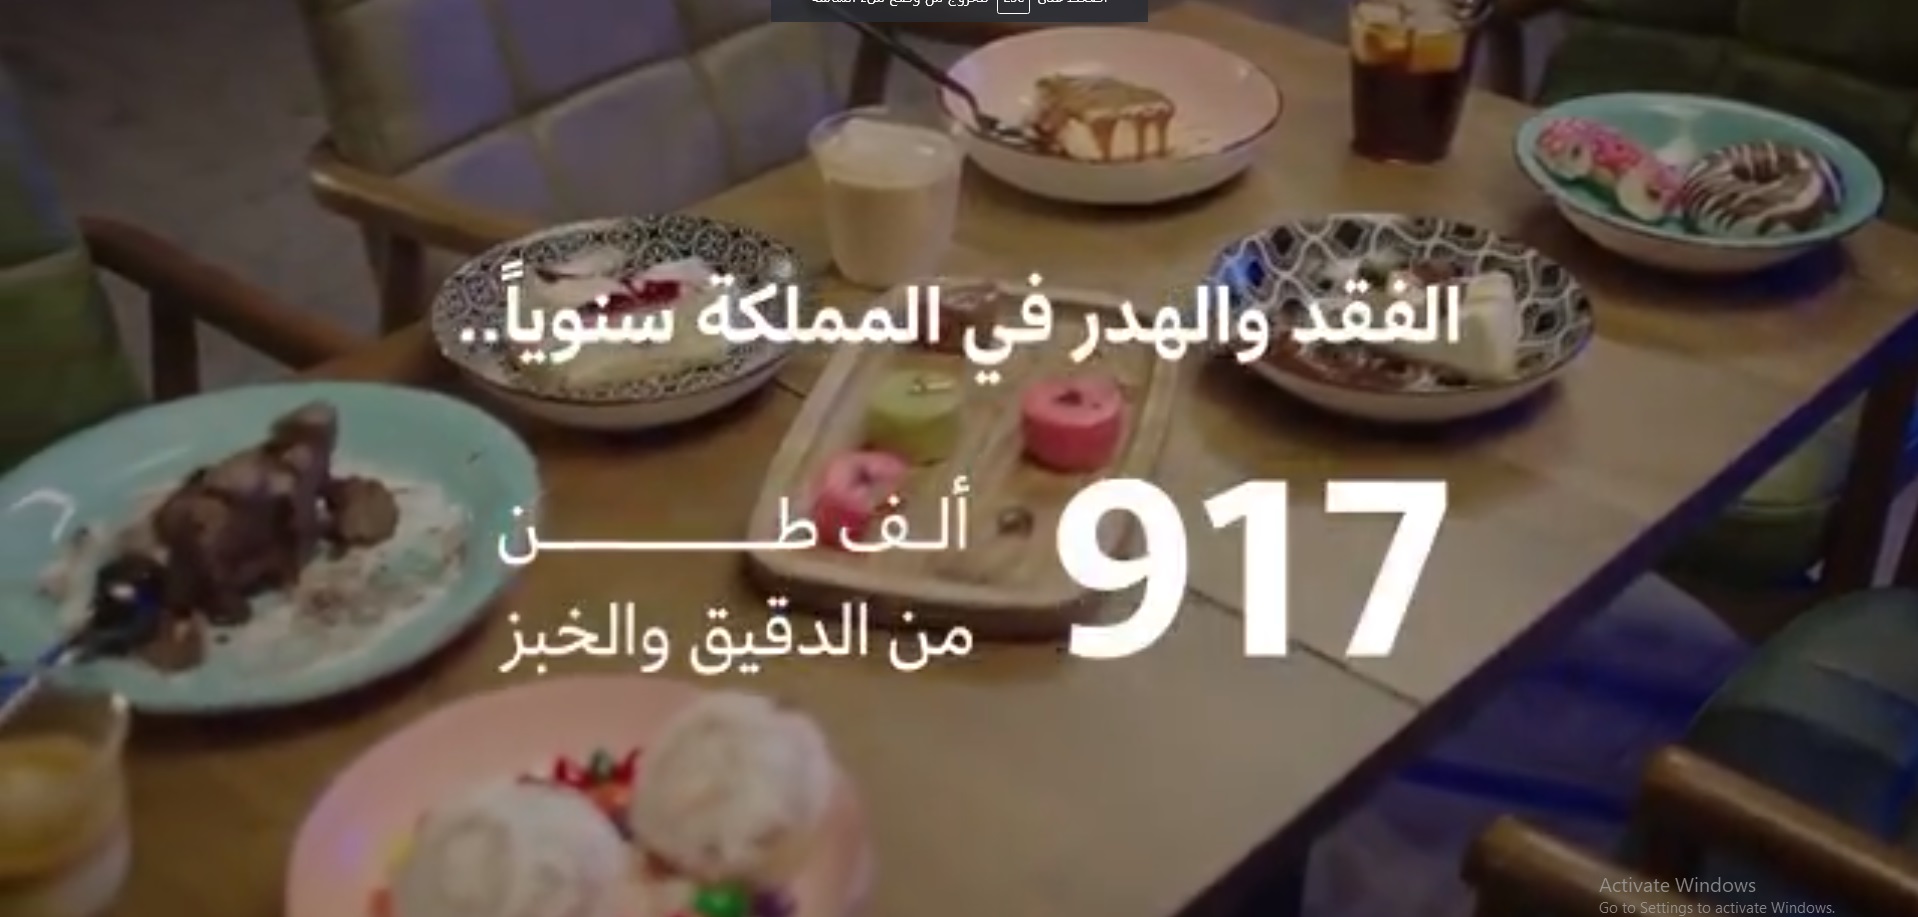 917 ألف طن دقيق وخبز هدر غذائي في السعودية سنويًّا